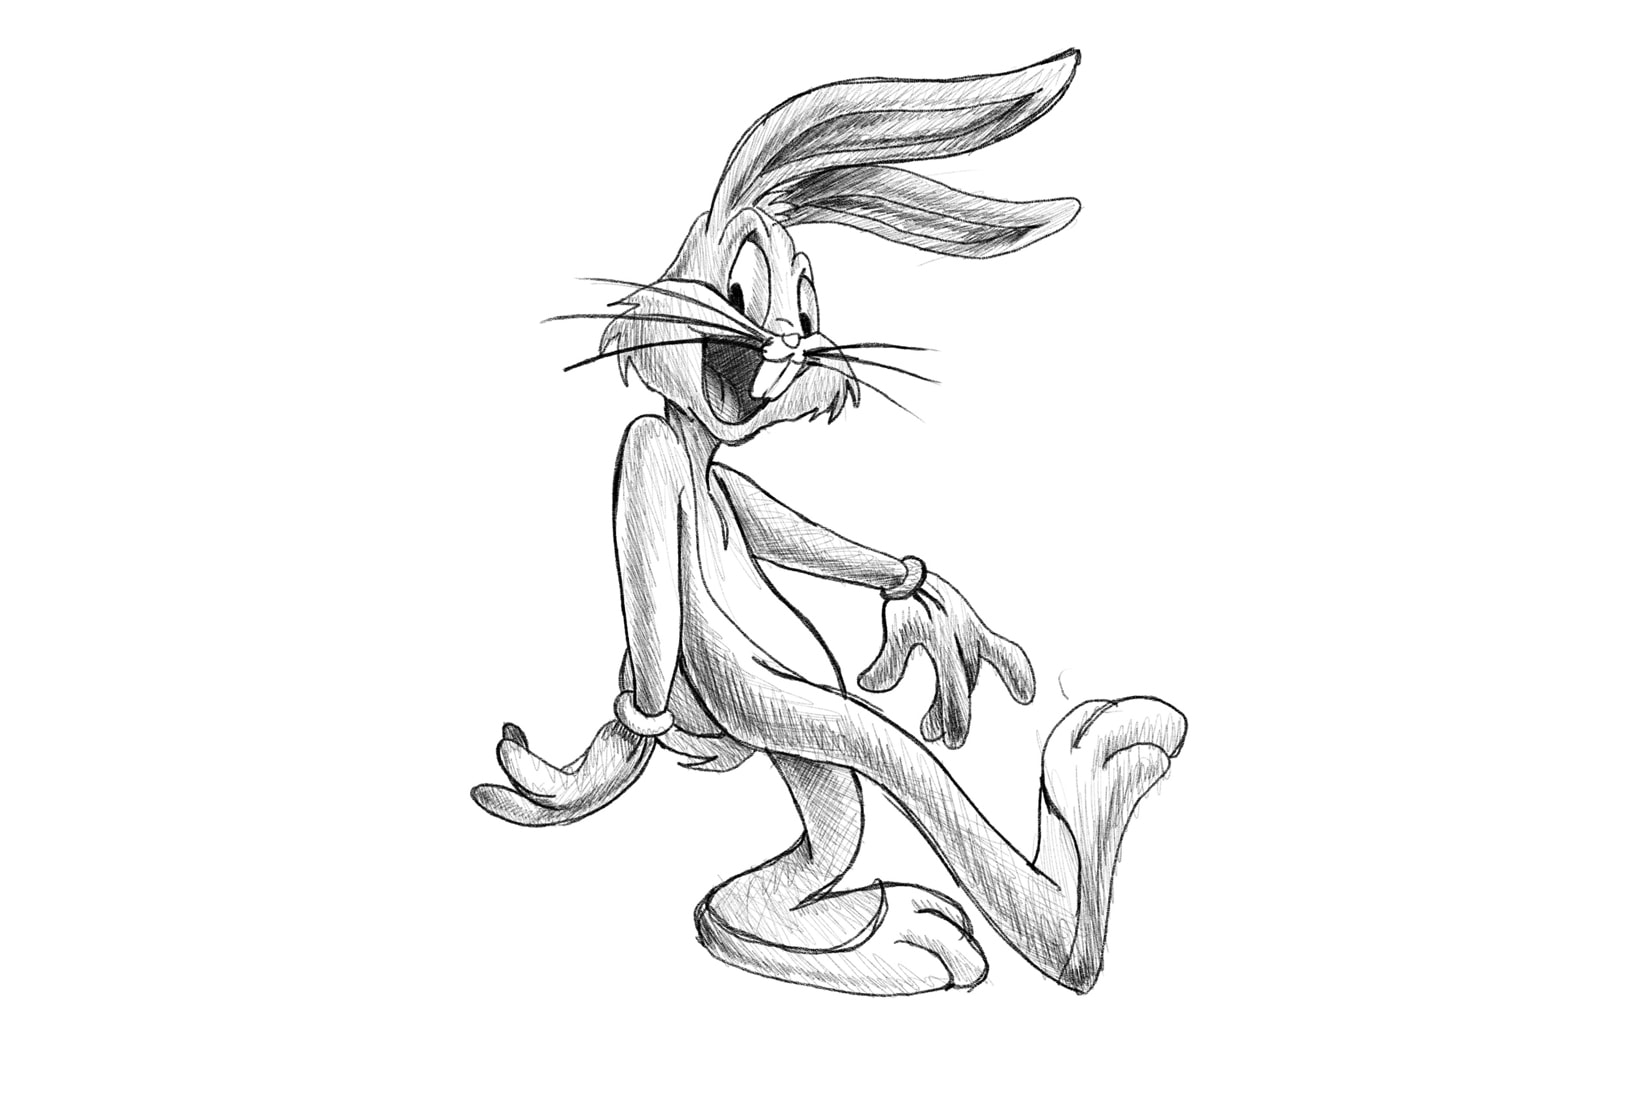 Daniel Arsham Bugs Bunny Pencil Sketch Artwork Archeology